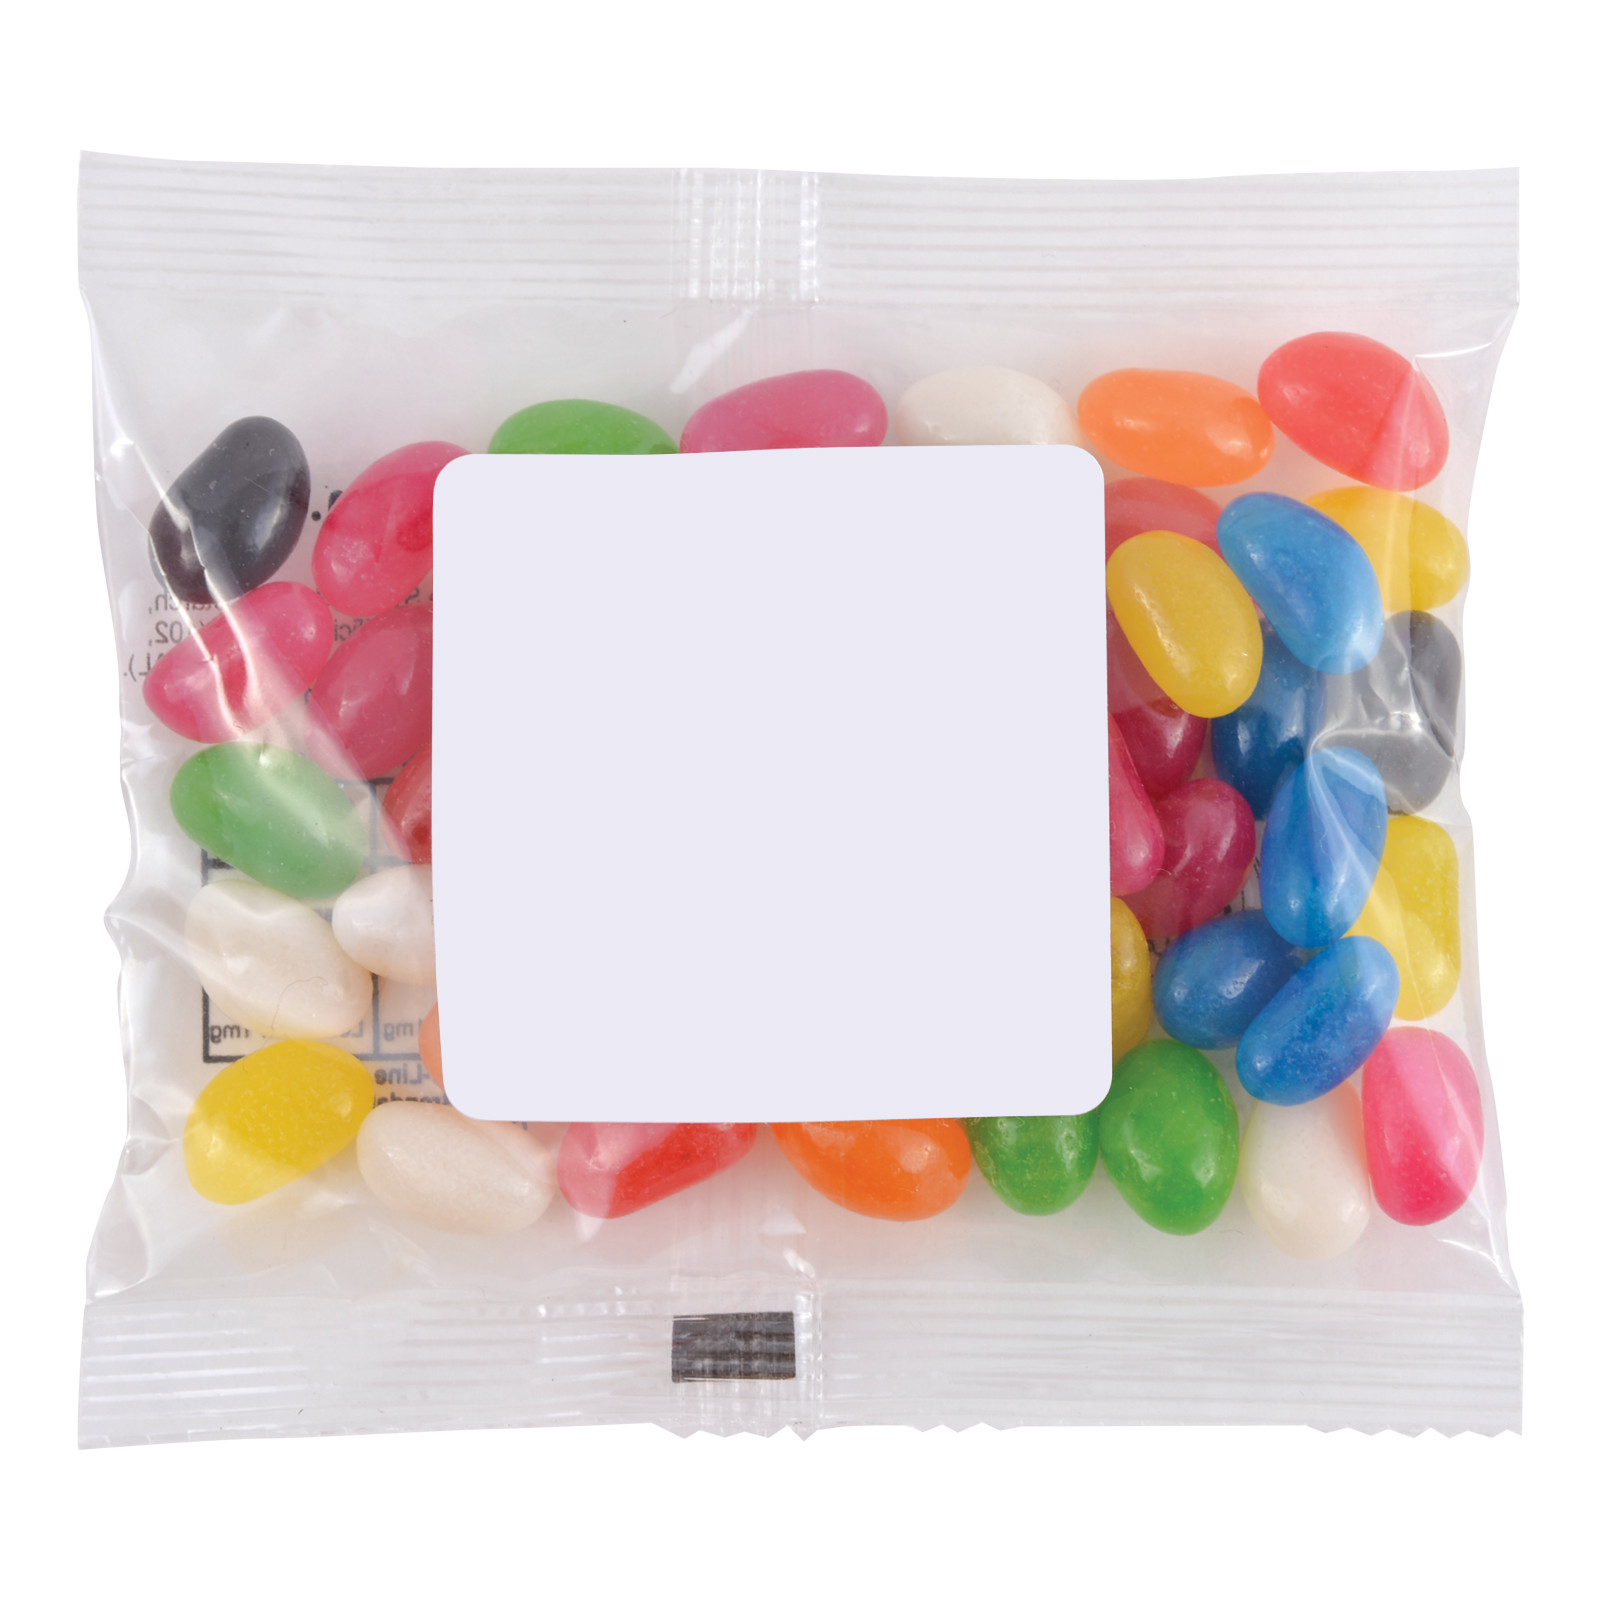 LL31470 Mini Jelly Beans in 50 Gram Cello Bag